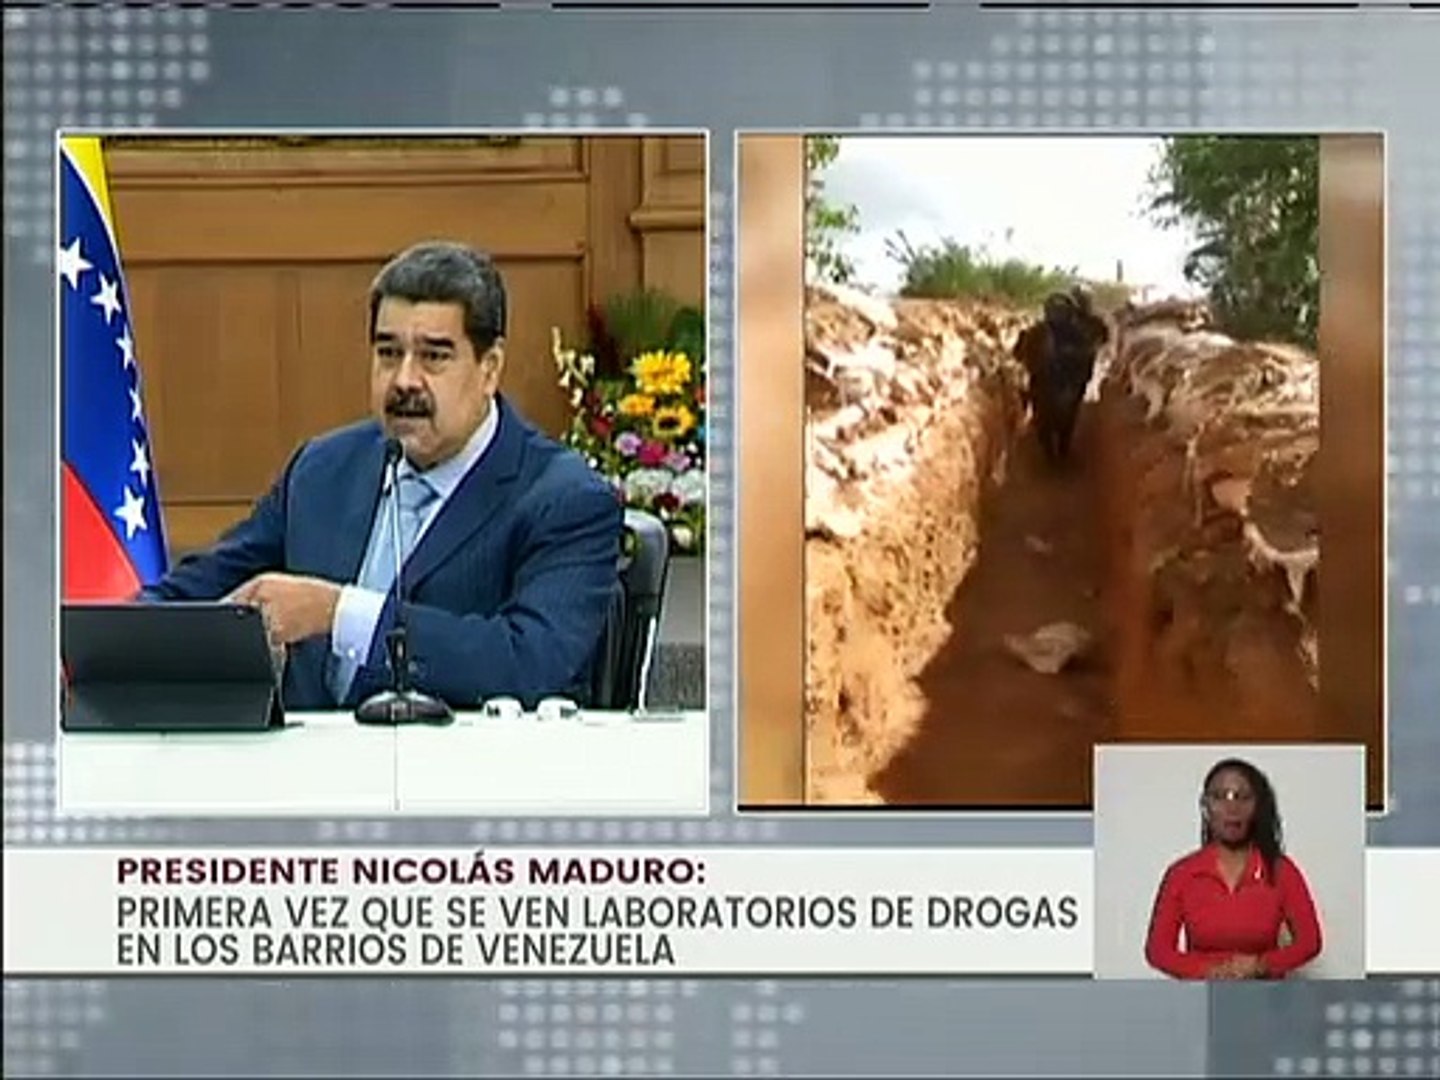 Pdte. Maduro: El que se crea Pablo Escobar Gaviria para imponer terrorismo  tendrá el mismo destino - Vídeo Dailymotion